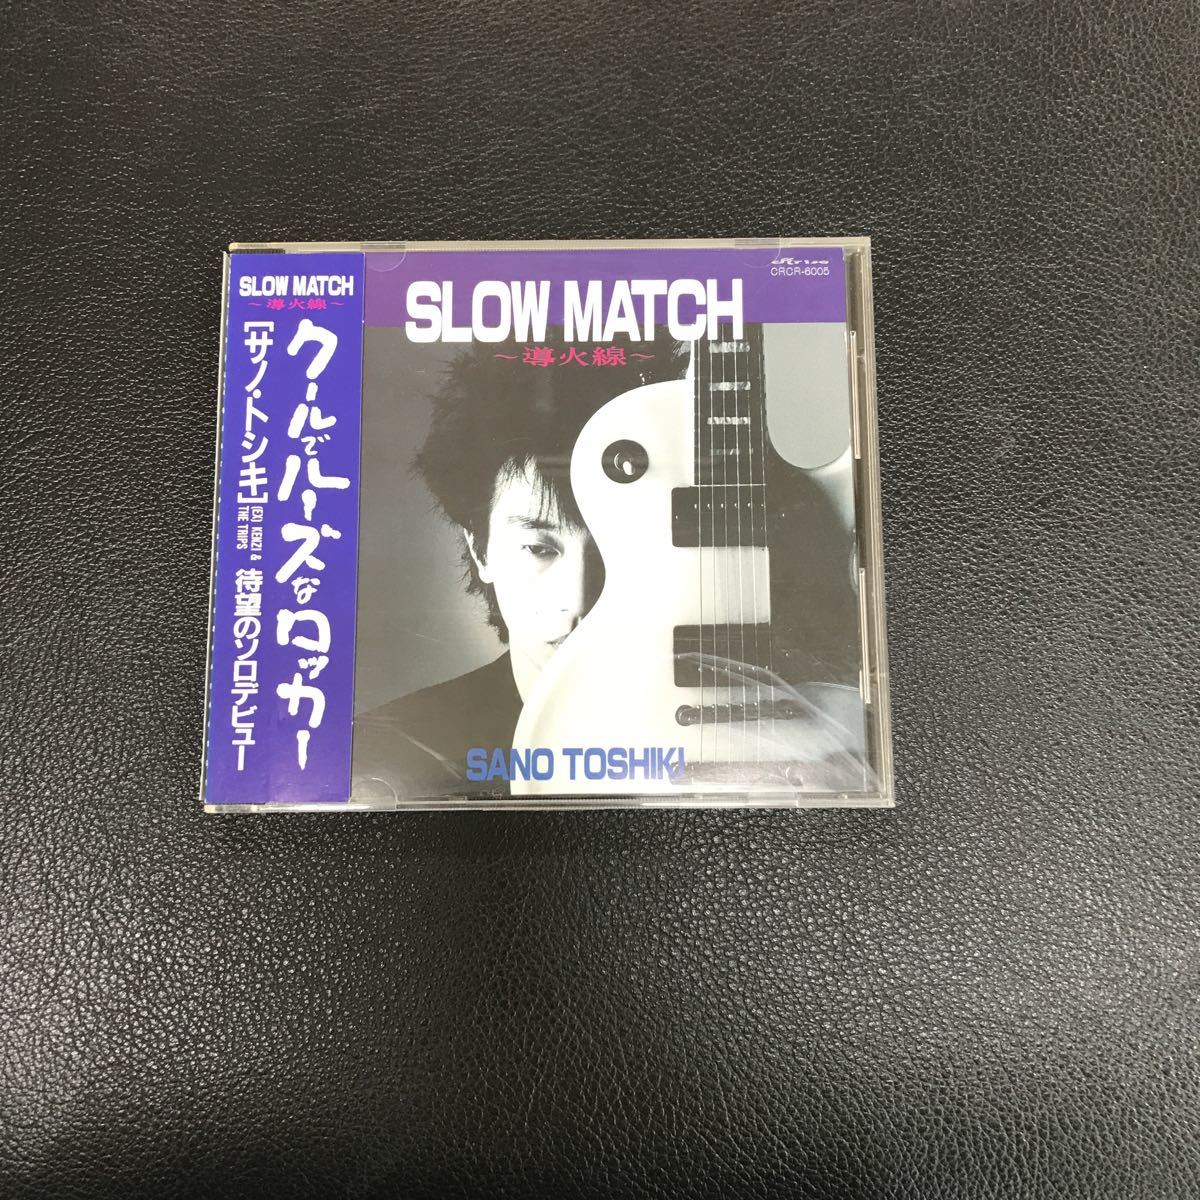 CD 中古☆【邦楽】サノ トシキ スローマッチ